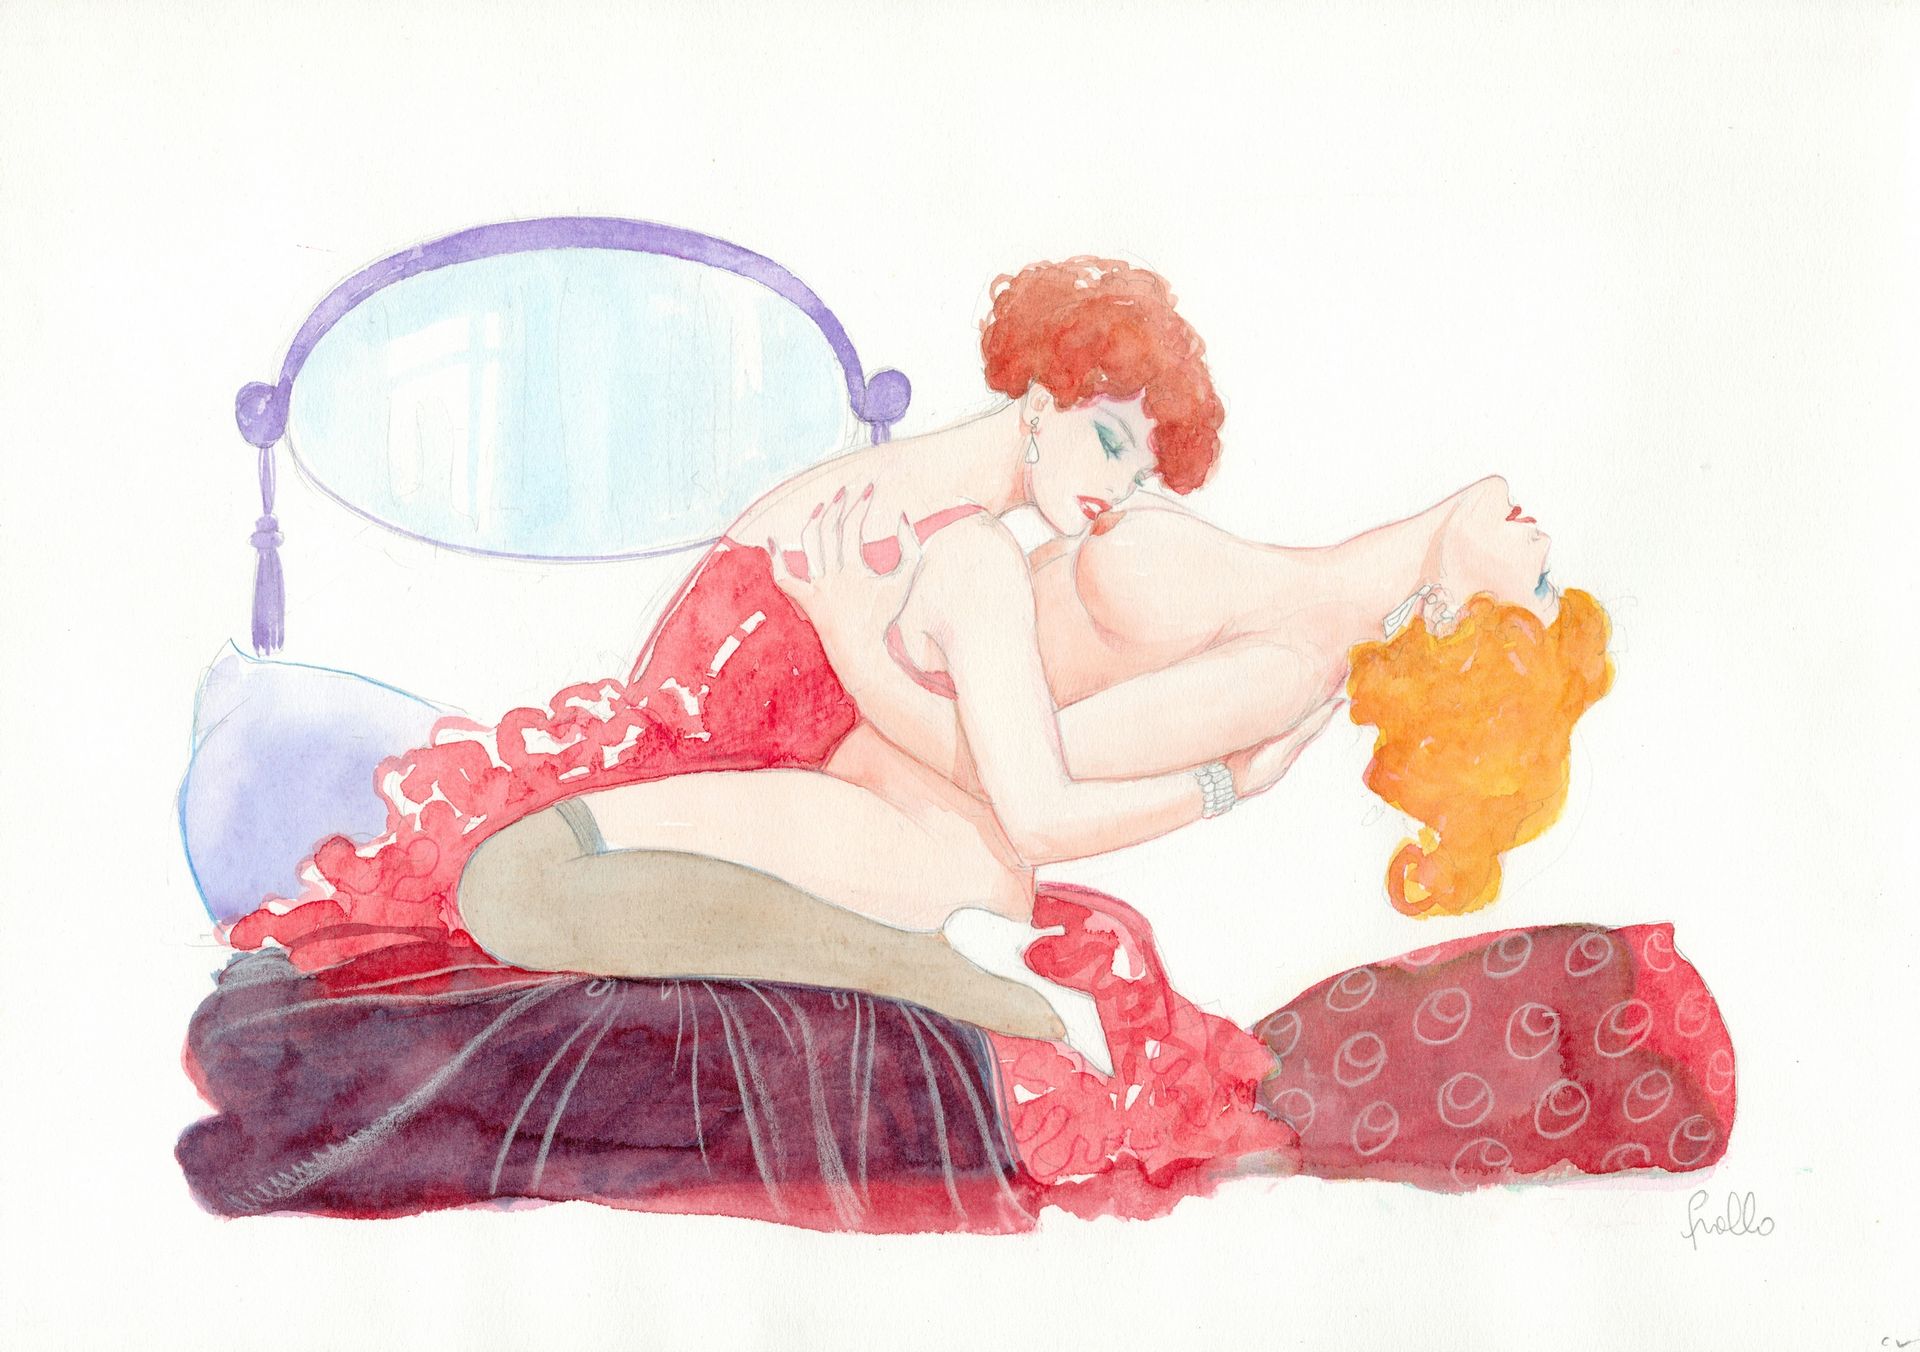 Frollo, Leone (1931-2018). 石墨和水彩用于这幅来自莫娜街世界的原创色情插图。弗罗洛现在被公认为是无可争议的情色漫画大师之一。莫娜街是他&hellip;